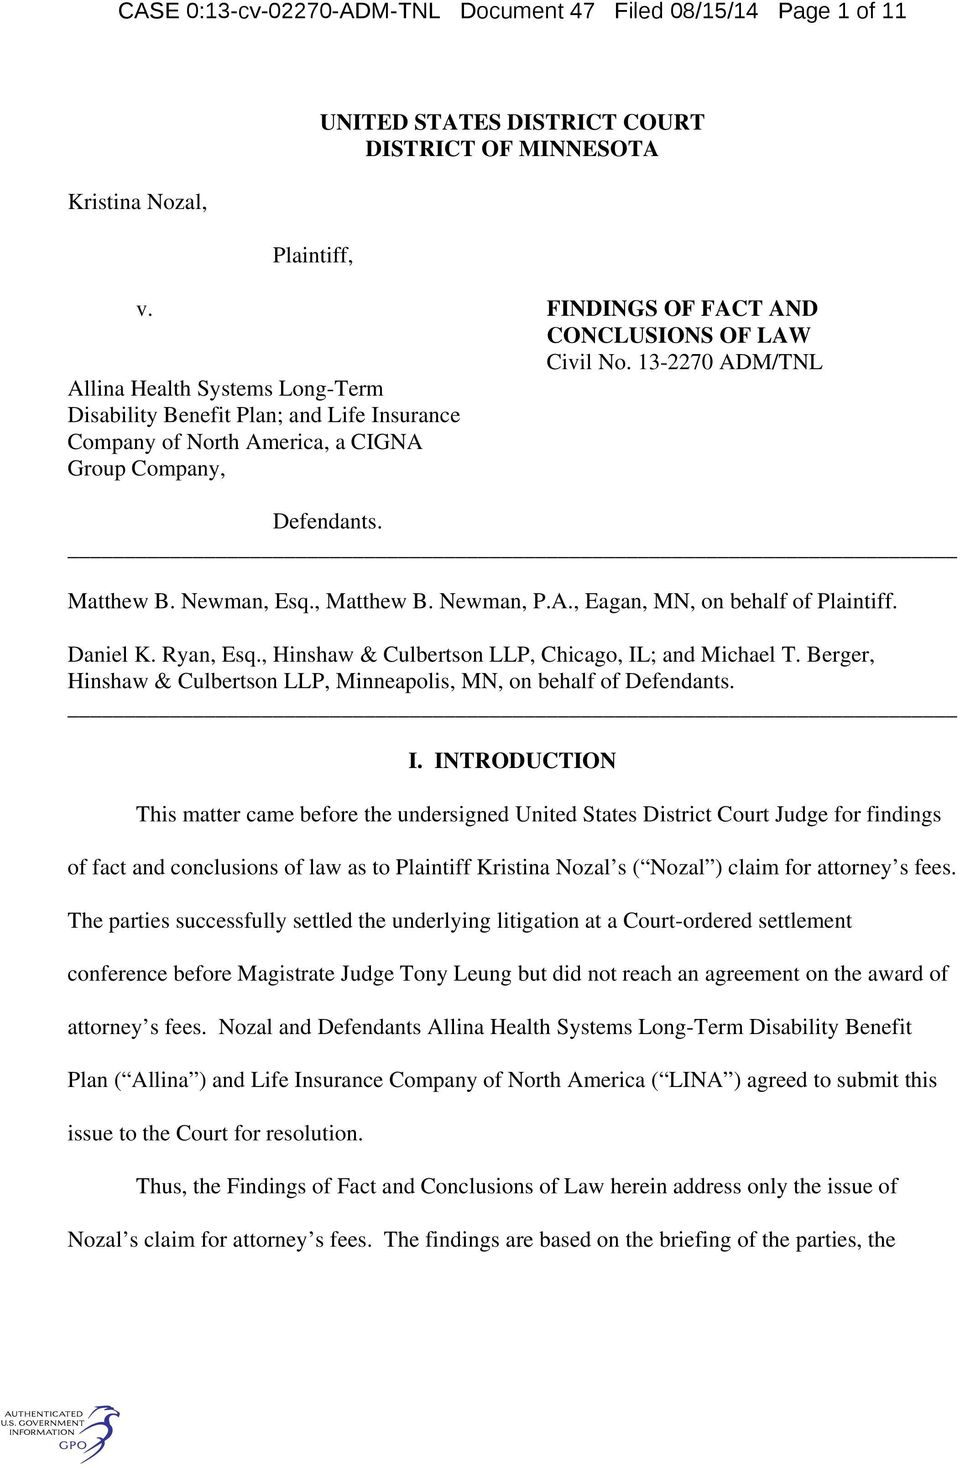 A., Eagan, MN, on behalf of Plaintiff. Daniel K. Ryan, Esq., Hinshaw & Culbertson LLP, Chicago, IL